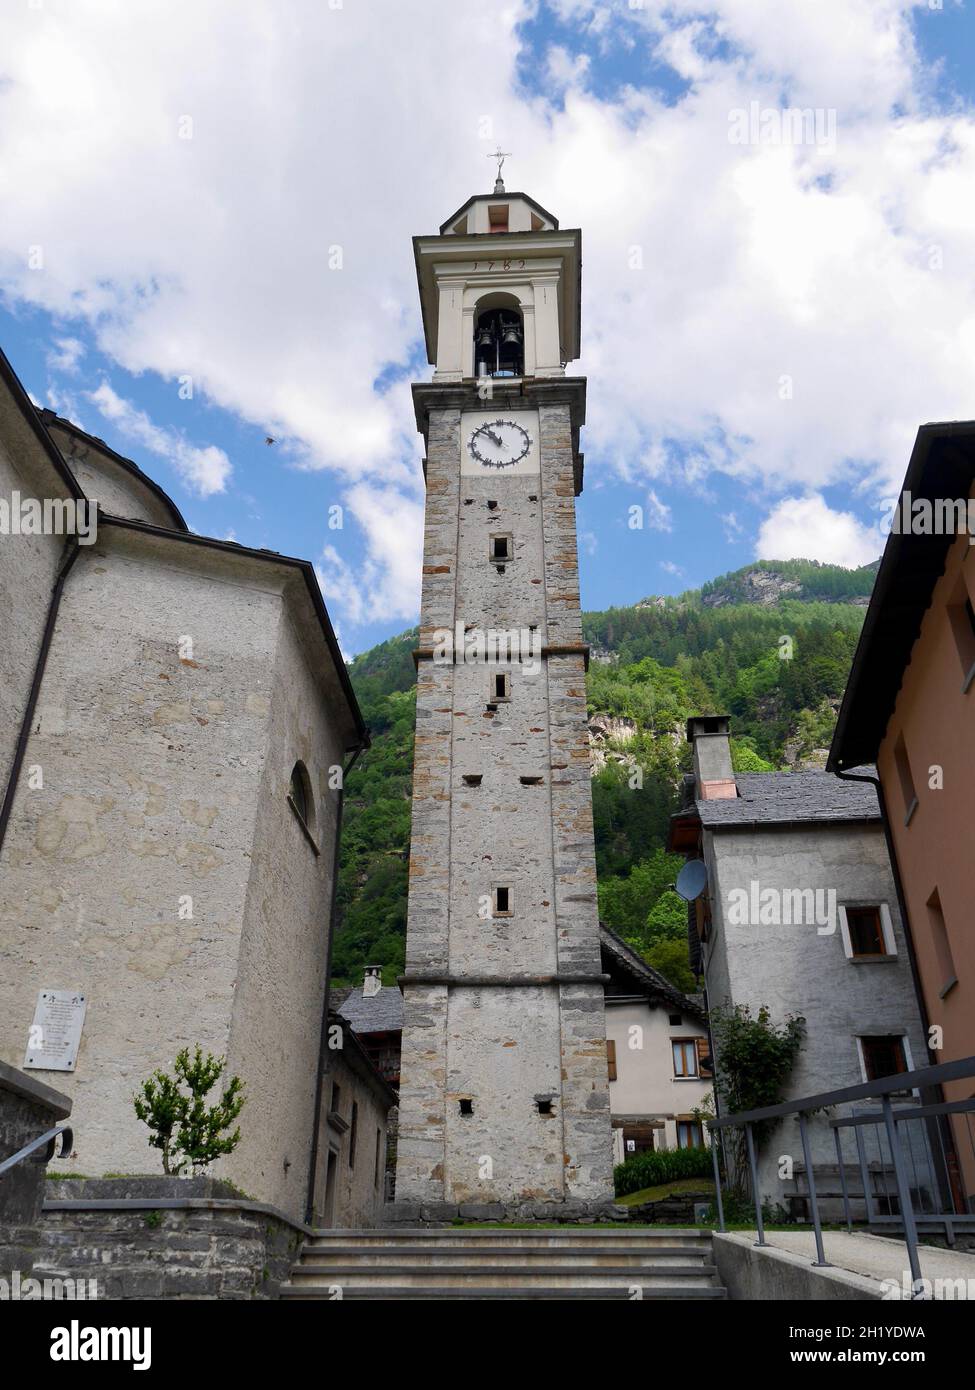 Typical Ticino stone church in Sonogno, Verzasca Valley, Switzerland. Stock Photo